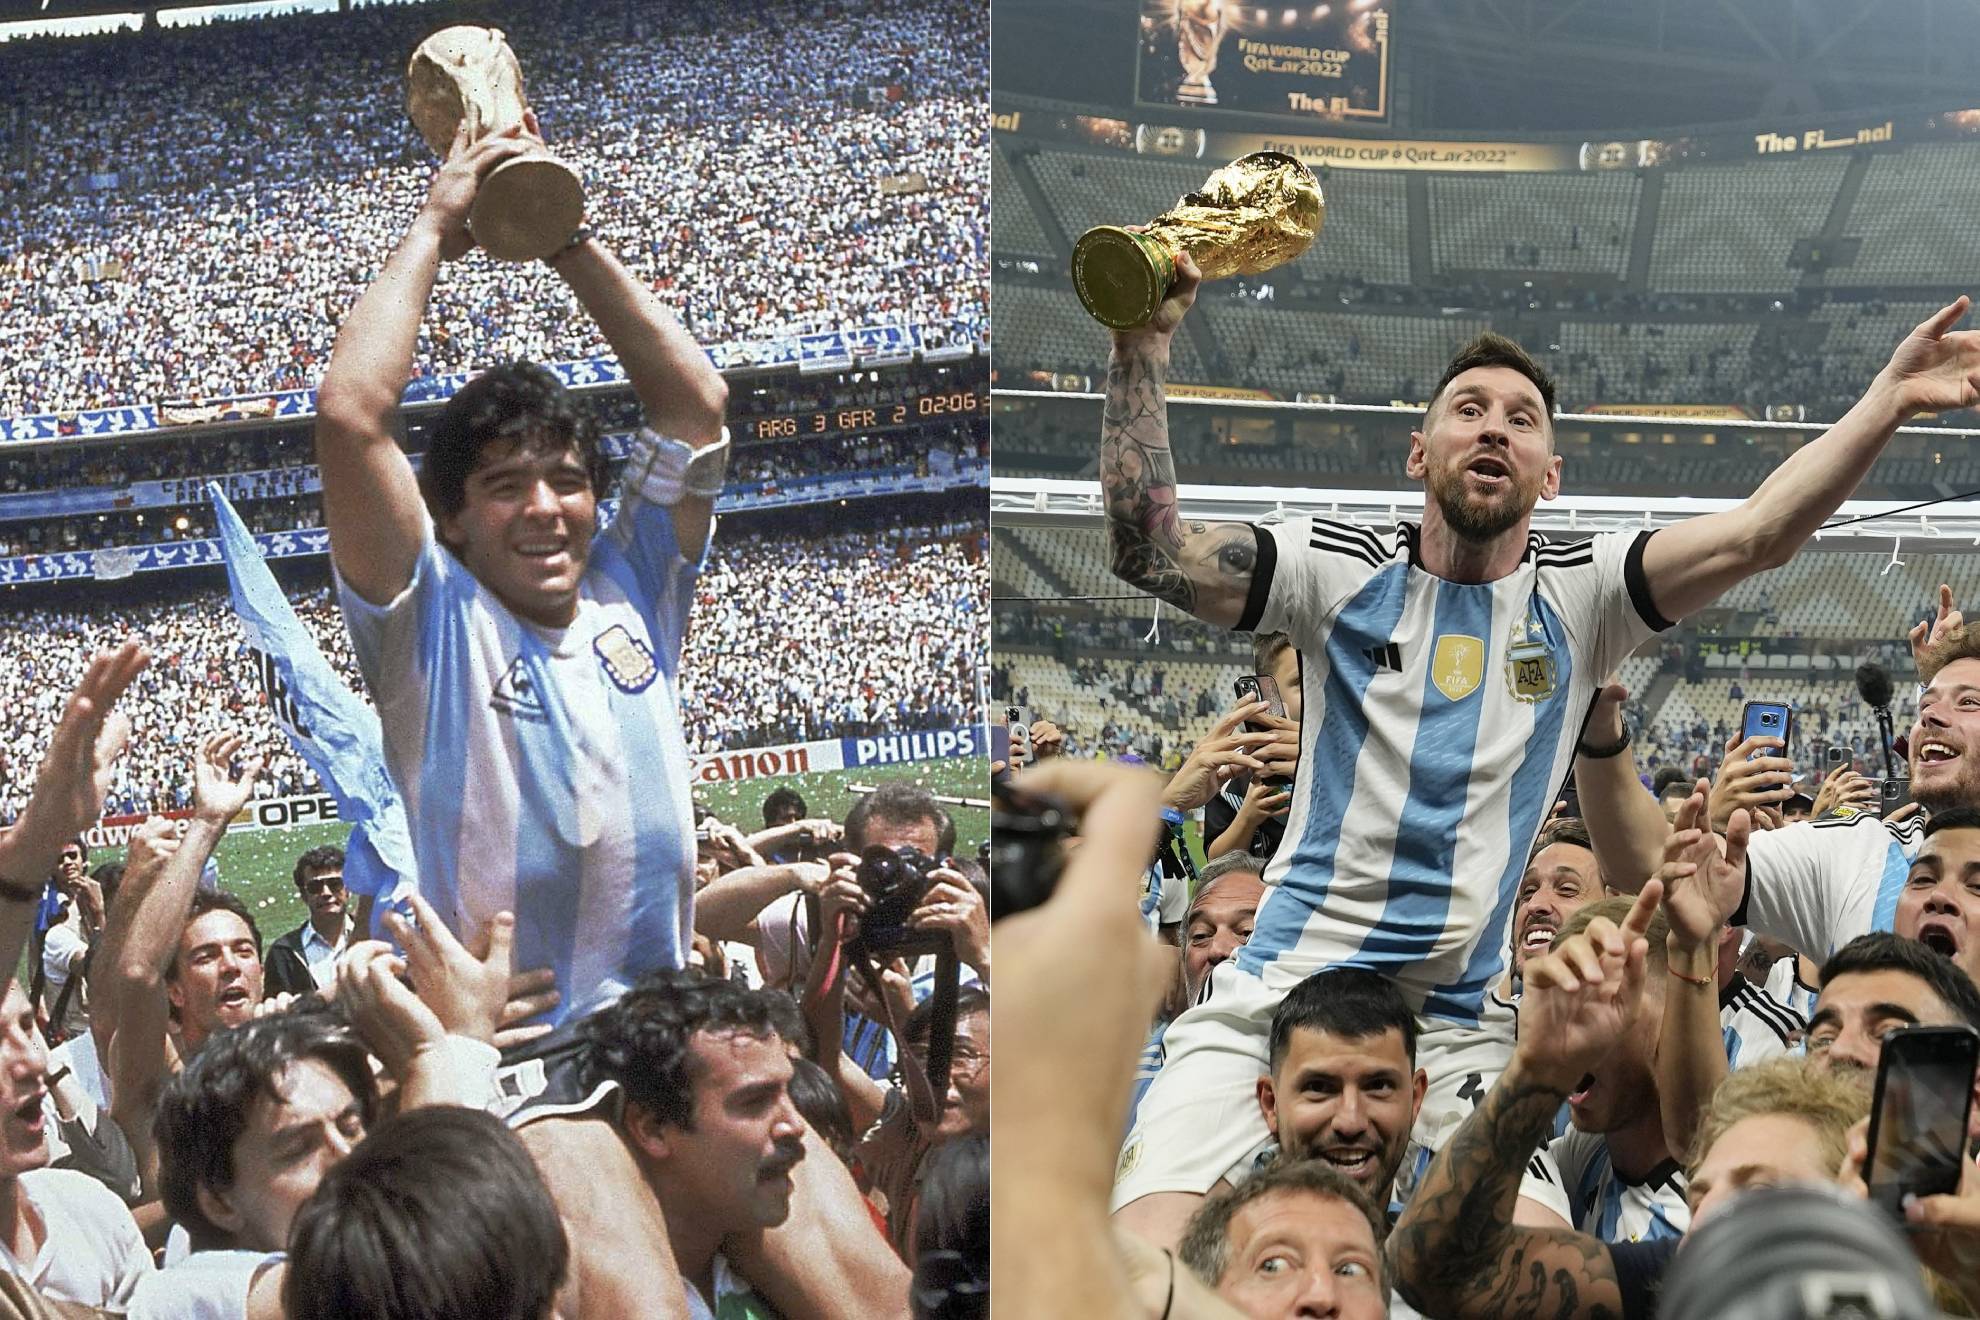 Thưởng thức hình ảnh Messi ăn mừng vô địch World Cup sẽ khiến bạn cảm thấy như đang trực tiếp ở trận đấu lịch sử đó. Với tâm hồn chiến thắng đầy mãnh liệt, Messi đã kết thúc chiến dịch chinh phục cúp vàng một cách hoành tráng. Và bạn sẽ cảm nhận được điều đó khi xem hình ảnh này.